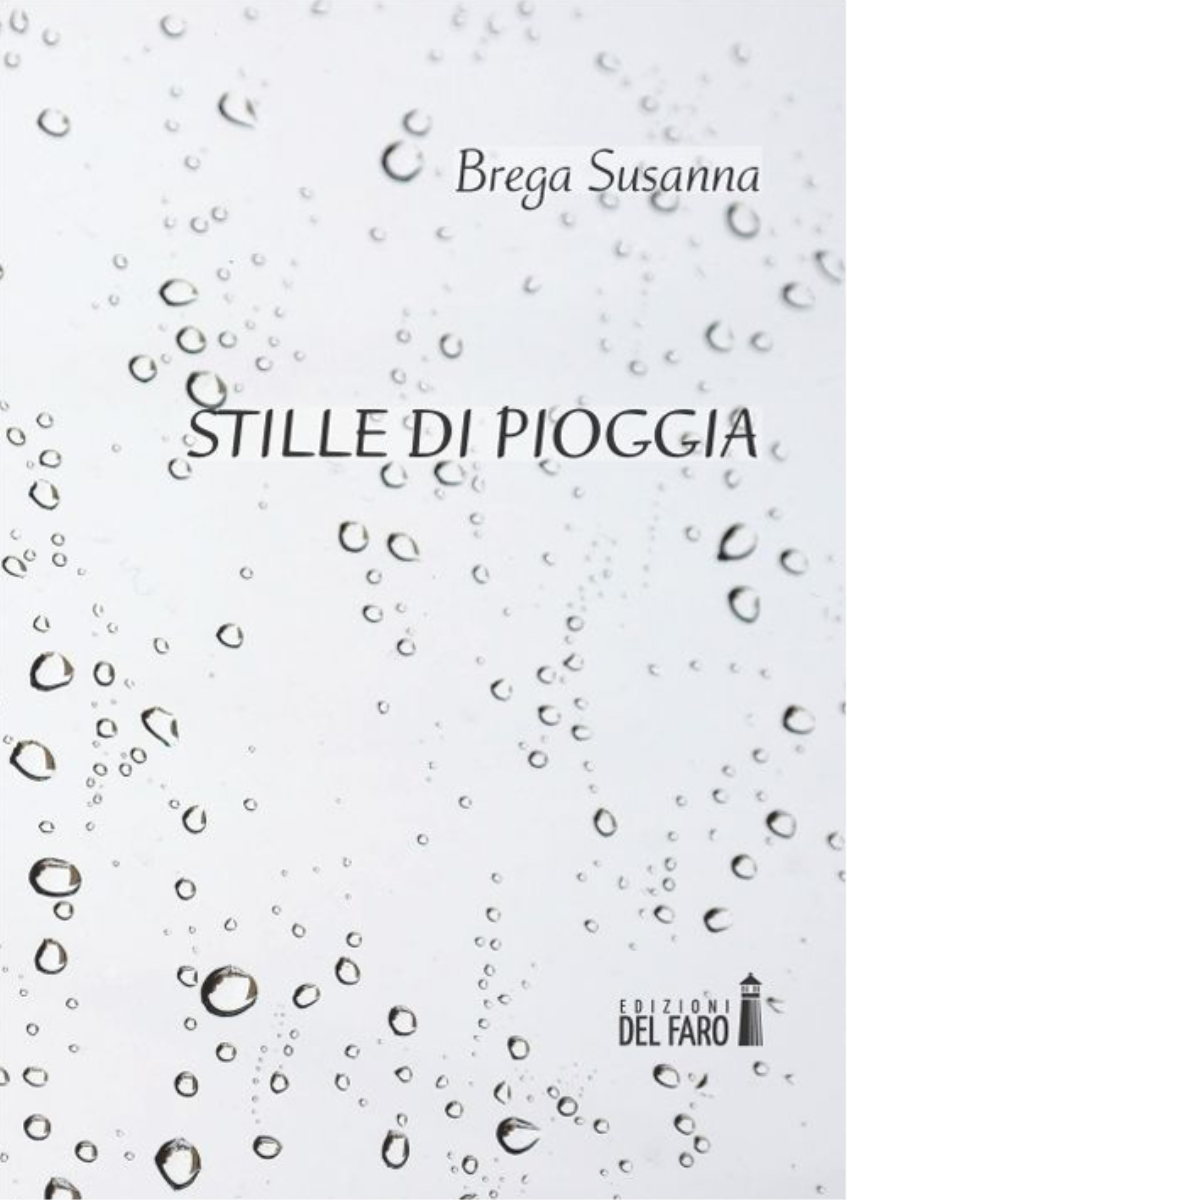  Stille di pioggia. di Brega Susanna - Edizione del faro, 2015